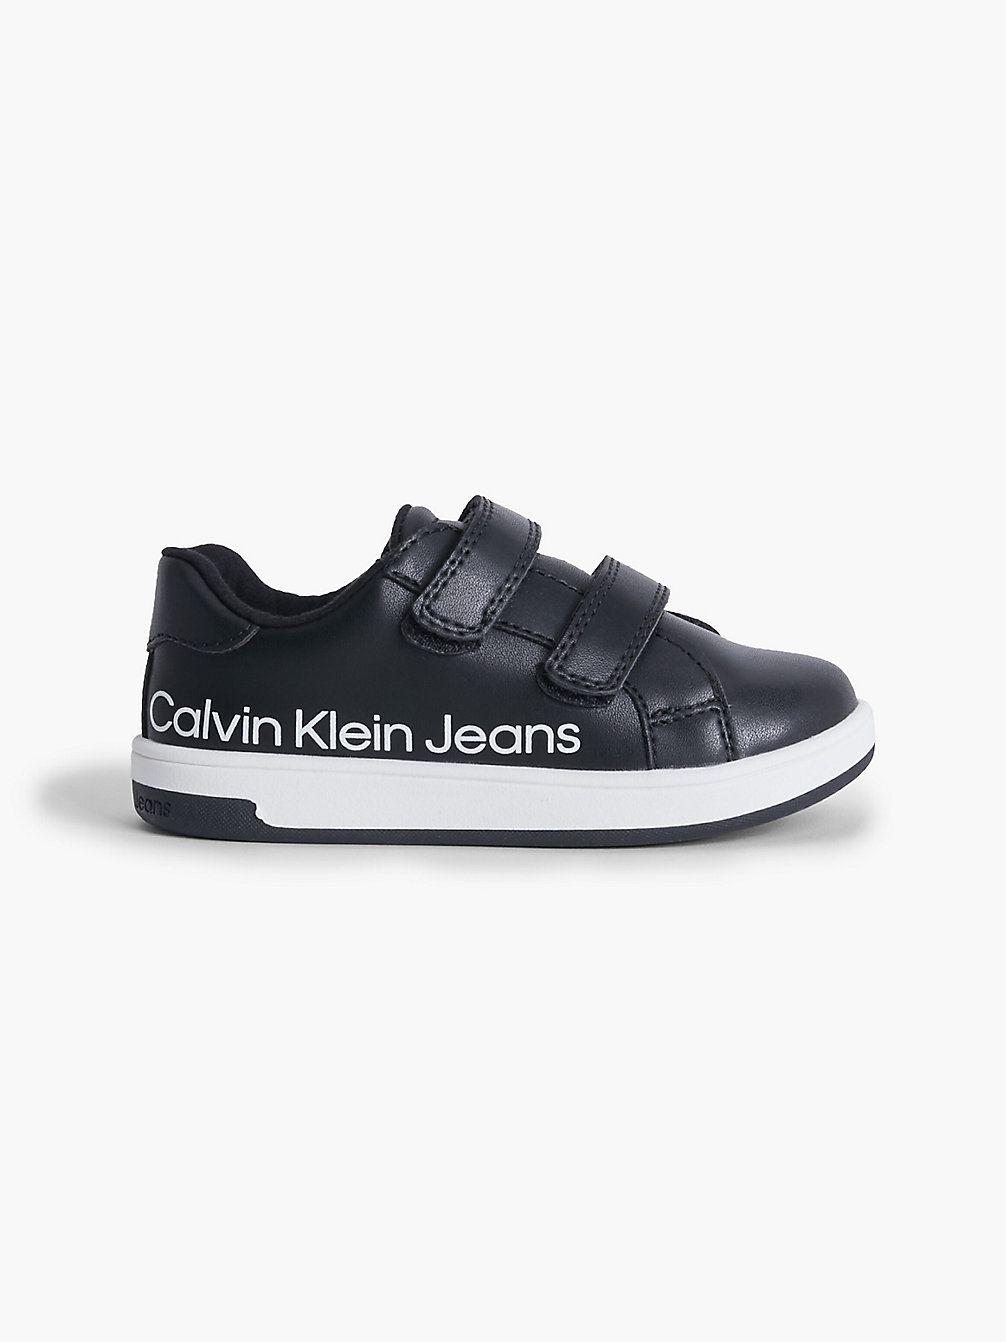 BLACK > Tenisówki Dziecięce Z Przetworzonego Materiału > undefined kids unisex - Calvin Klein